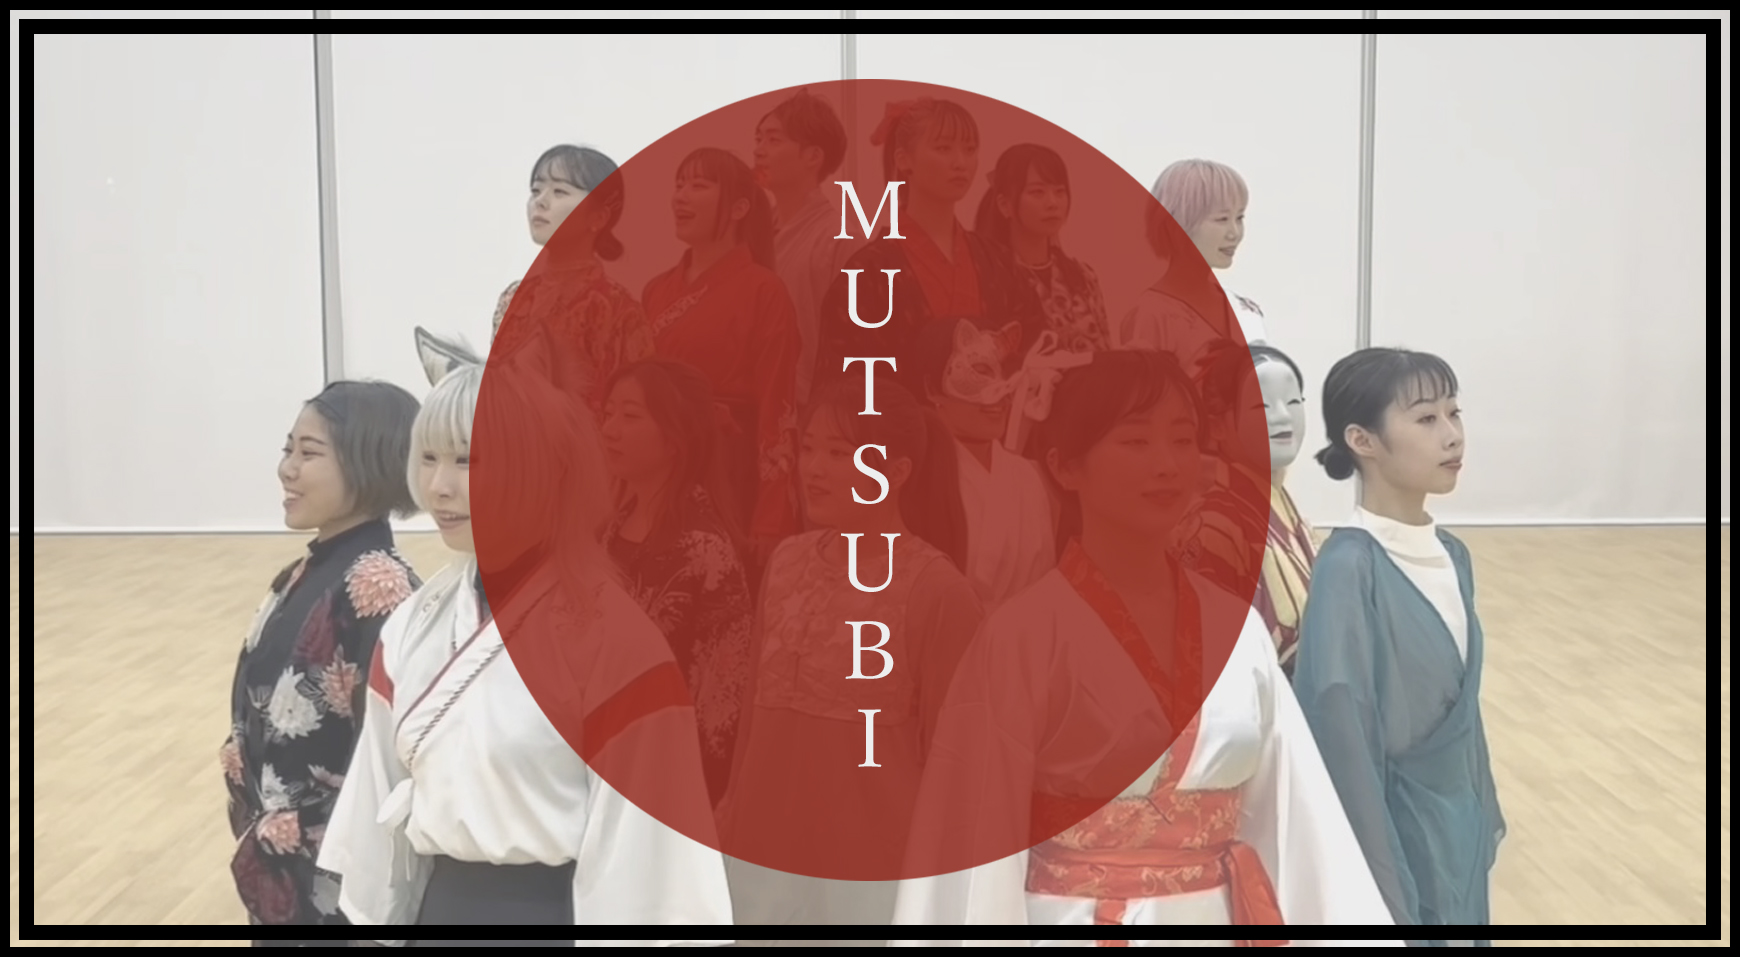 『MUTSUBI』 new season’s greetings!